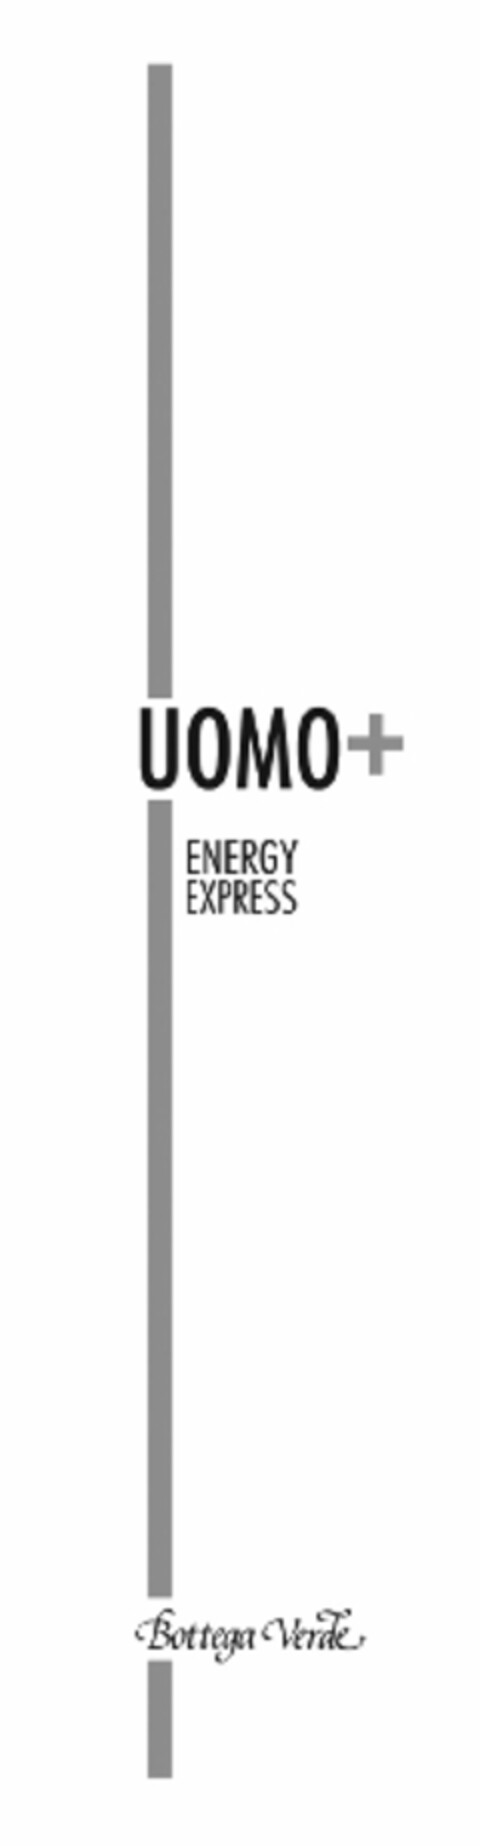 UOMO+ ENERGY EXPRESS BOTTEGA VERDE Logo (EUIPO, 10.12.2010)